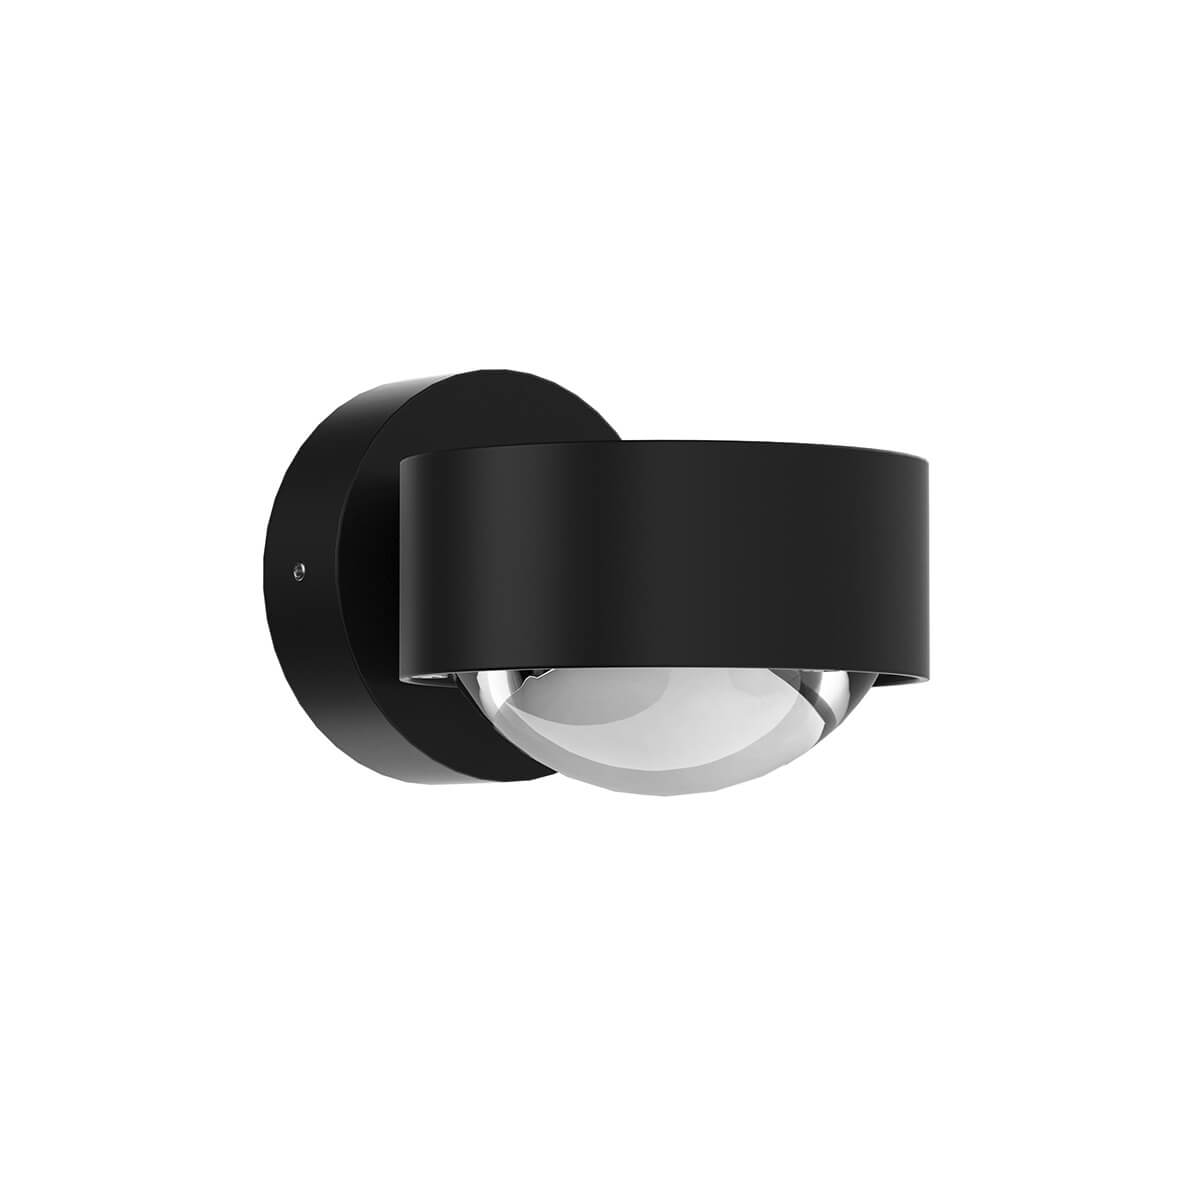 Moderne Wandleuchte PUK MINI WALL in mattschwarz - Flexible Badlampe mit dimmbarem Licht, perfekt als Spiegelleuchte oder indirekte Beleuchtung im Wohnzimmer